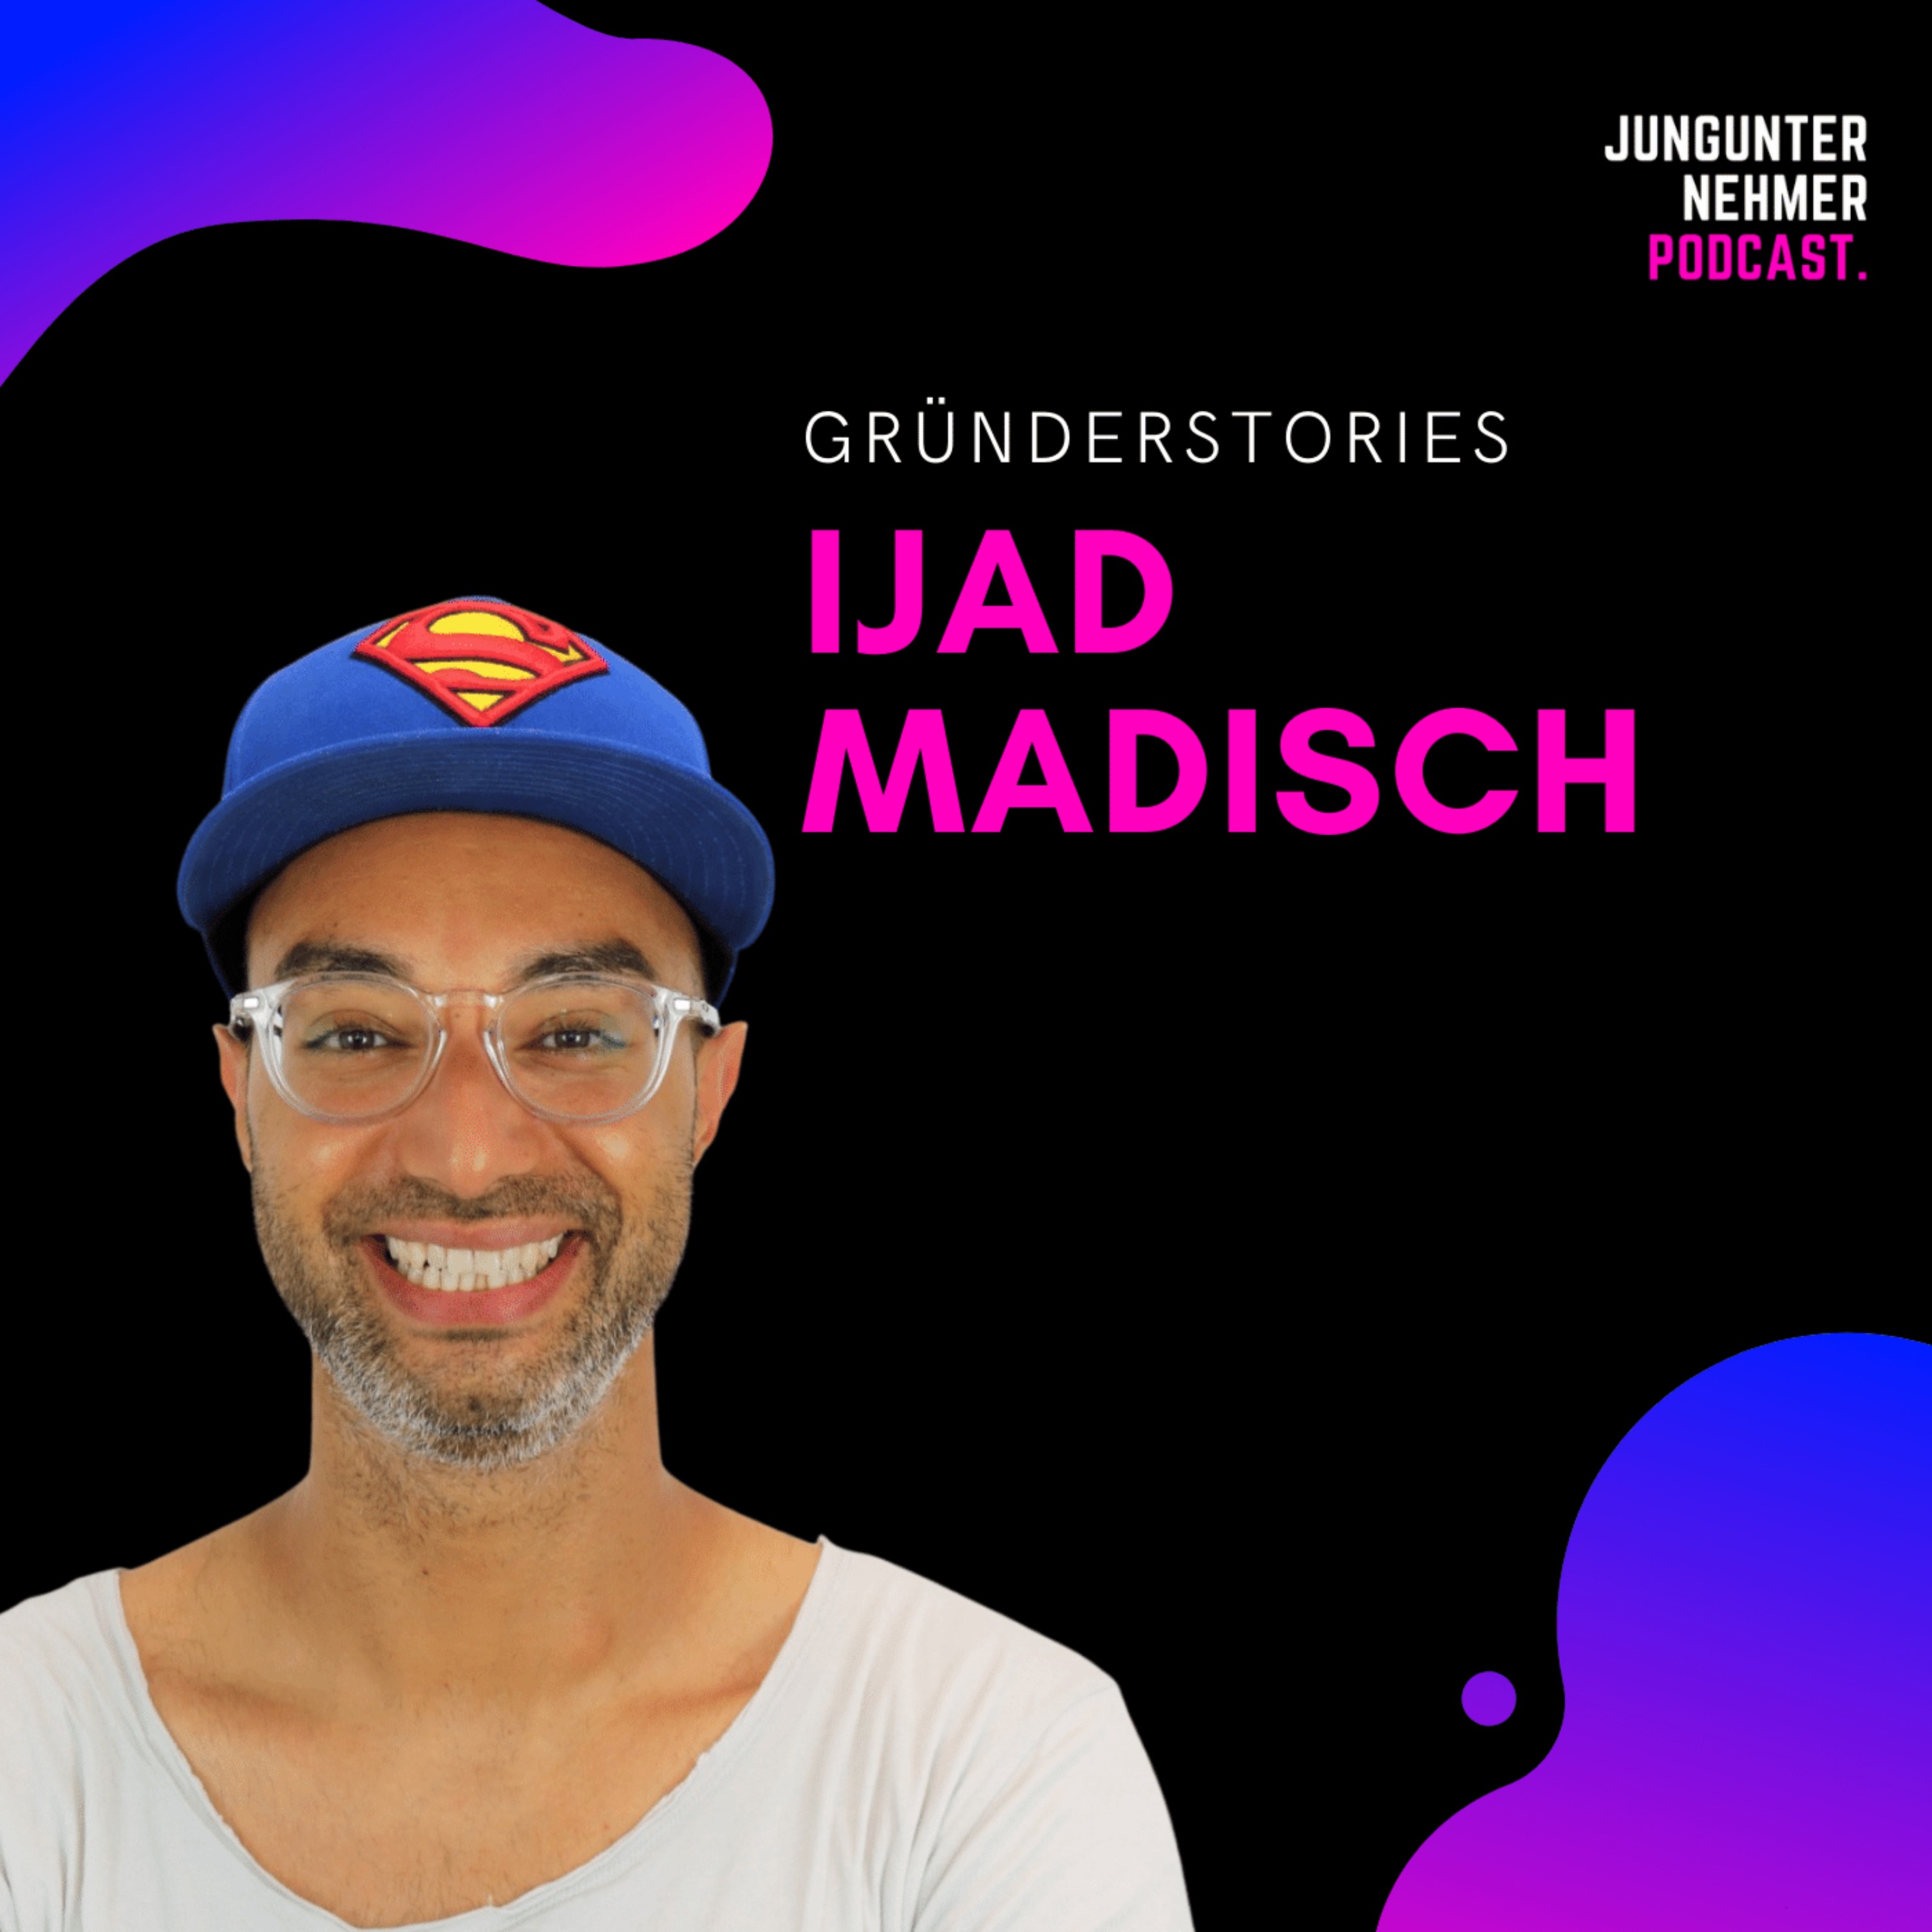 Ijad Madisch, ResearchGate | Gründerstories Image